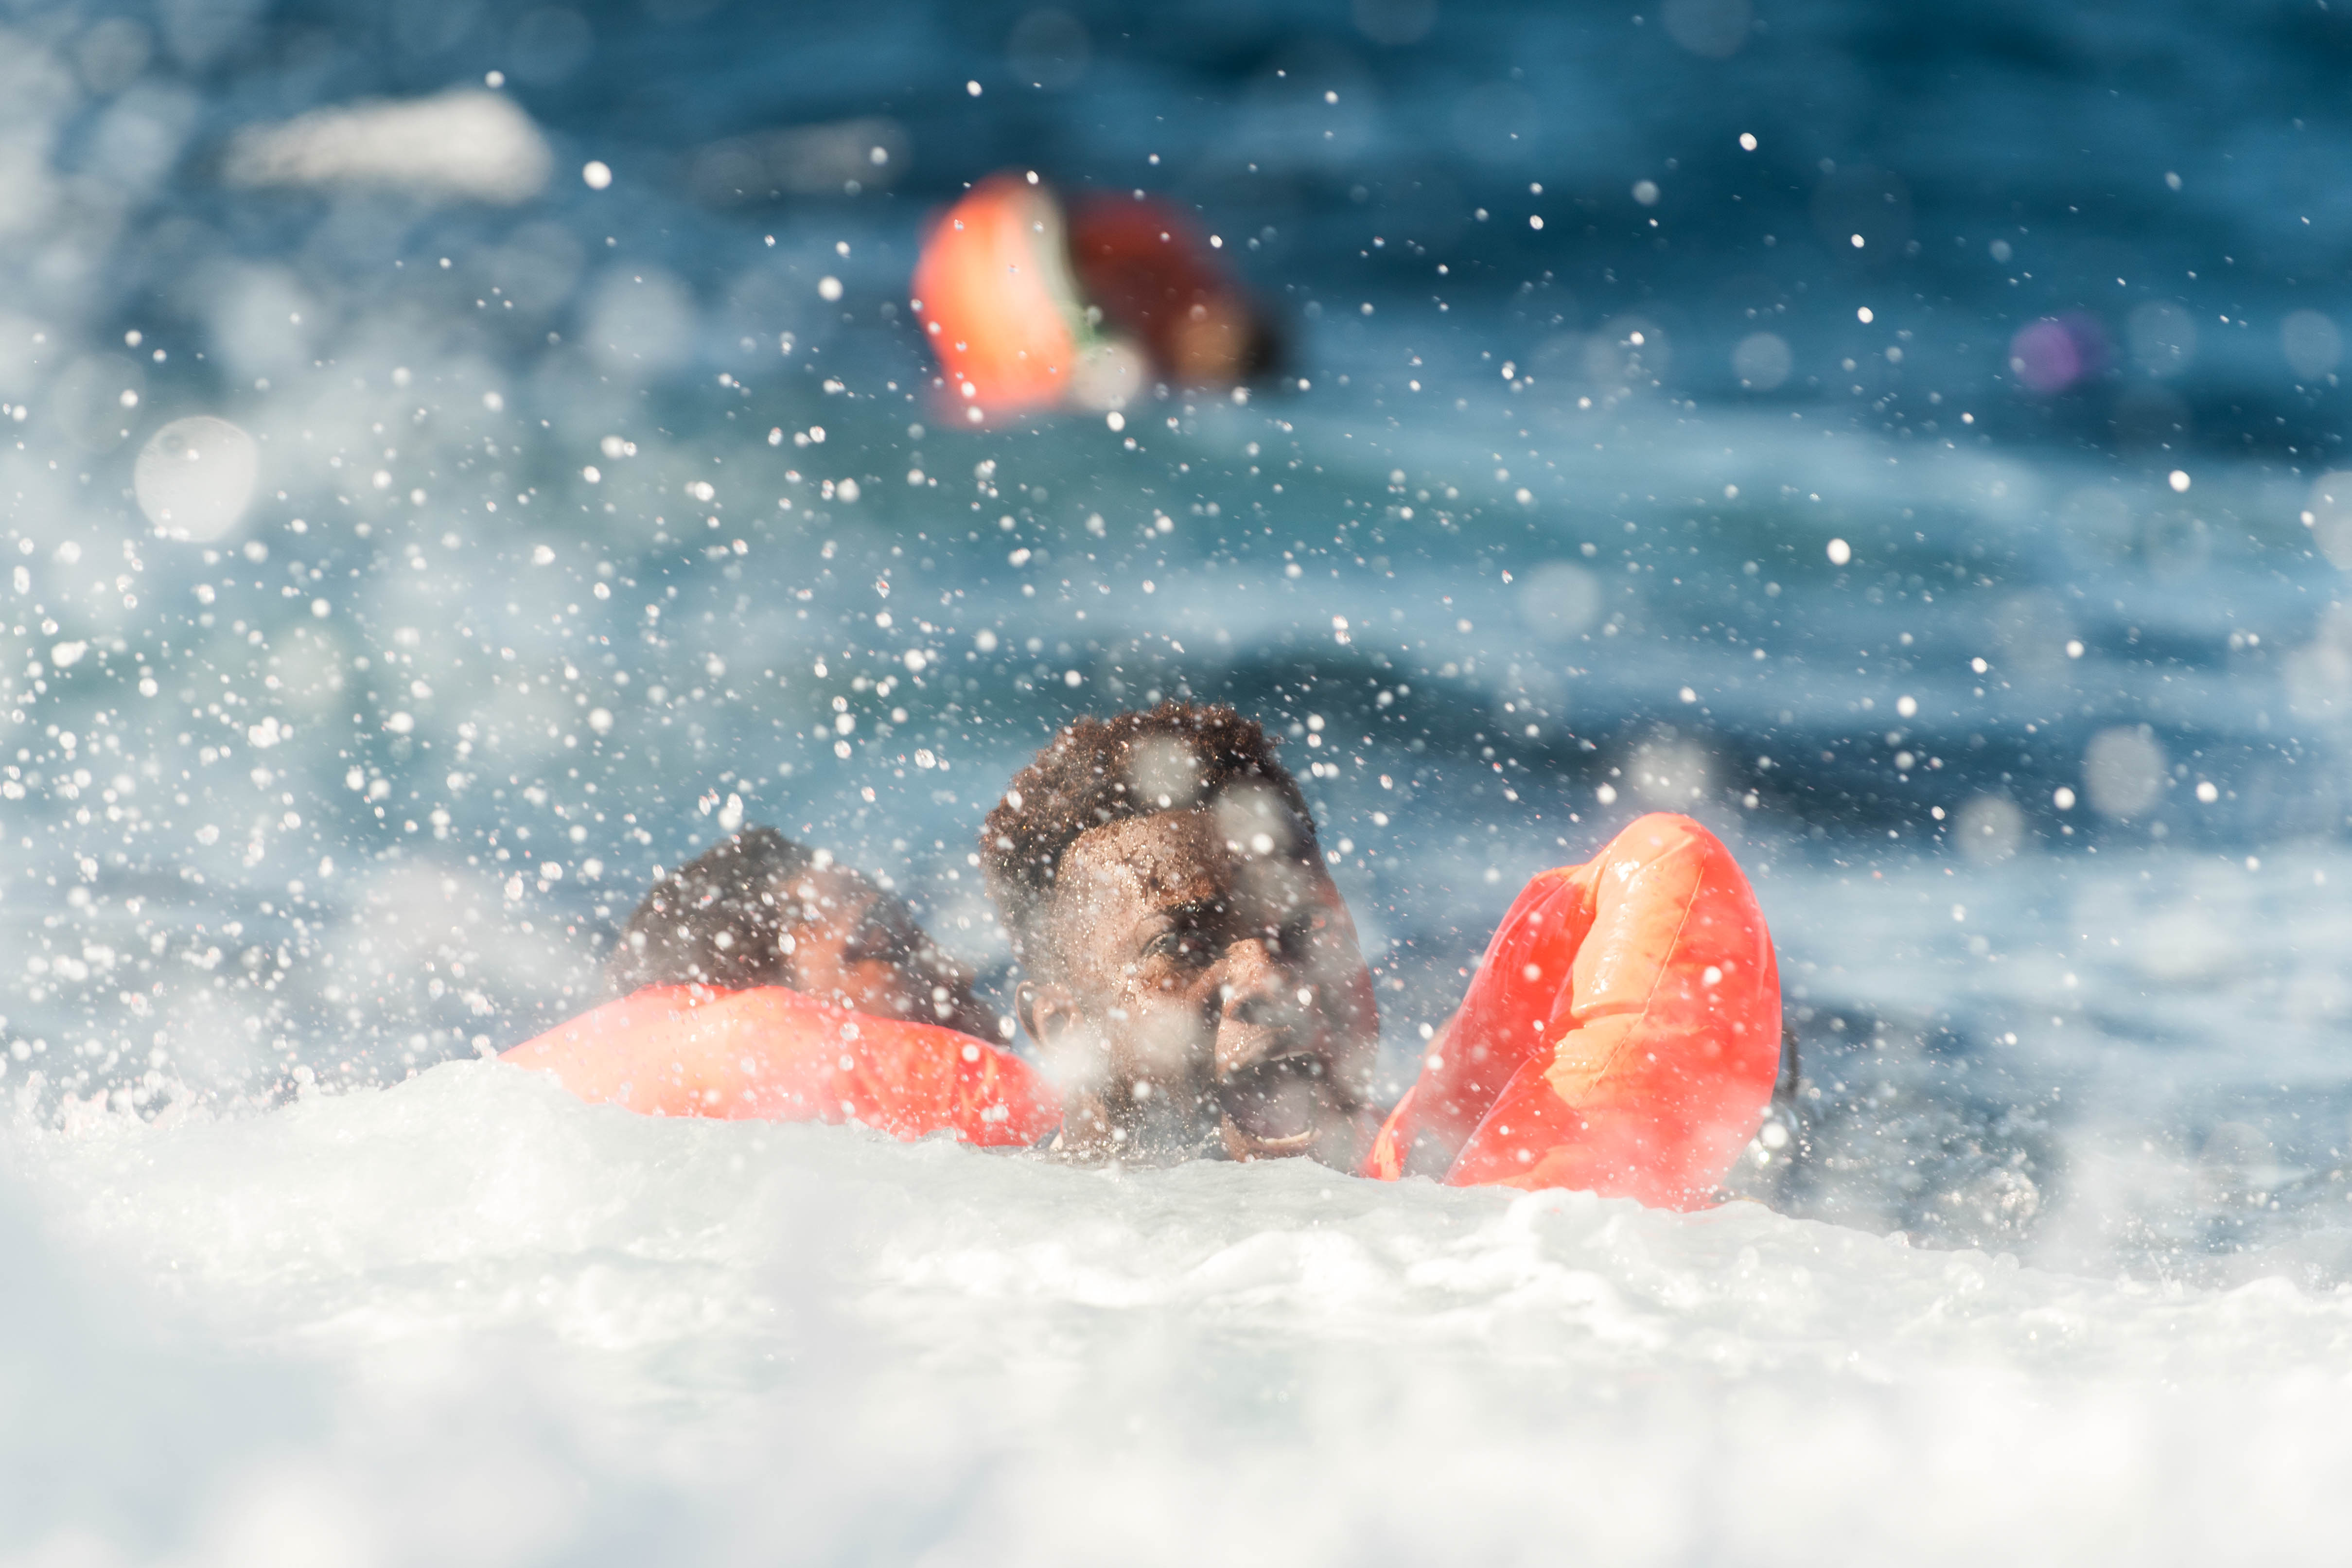 Le 27 janvier 2018, l’Aquarius a secouru 99 personnes en Méditerranée. Quand le bateau est arrivé sur le lieu du naufrage, des dizaines de personnes étaient déjà à l’eau. Un nombre indéterminé d'hommes, de femmes et d'enfants sont portés disparus, présumés noyés.  © Laurin Schmid/SOS Méditerranée, 27 janvier 2018